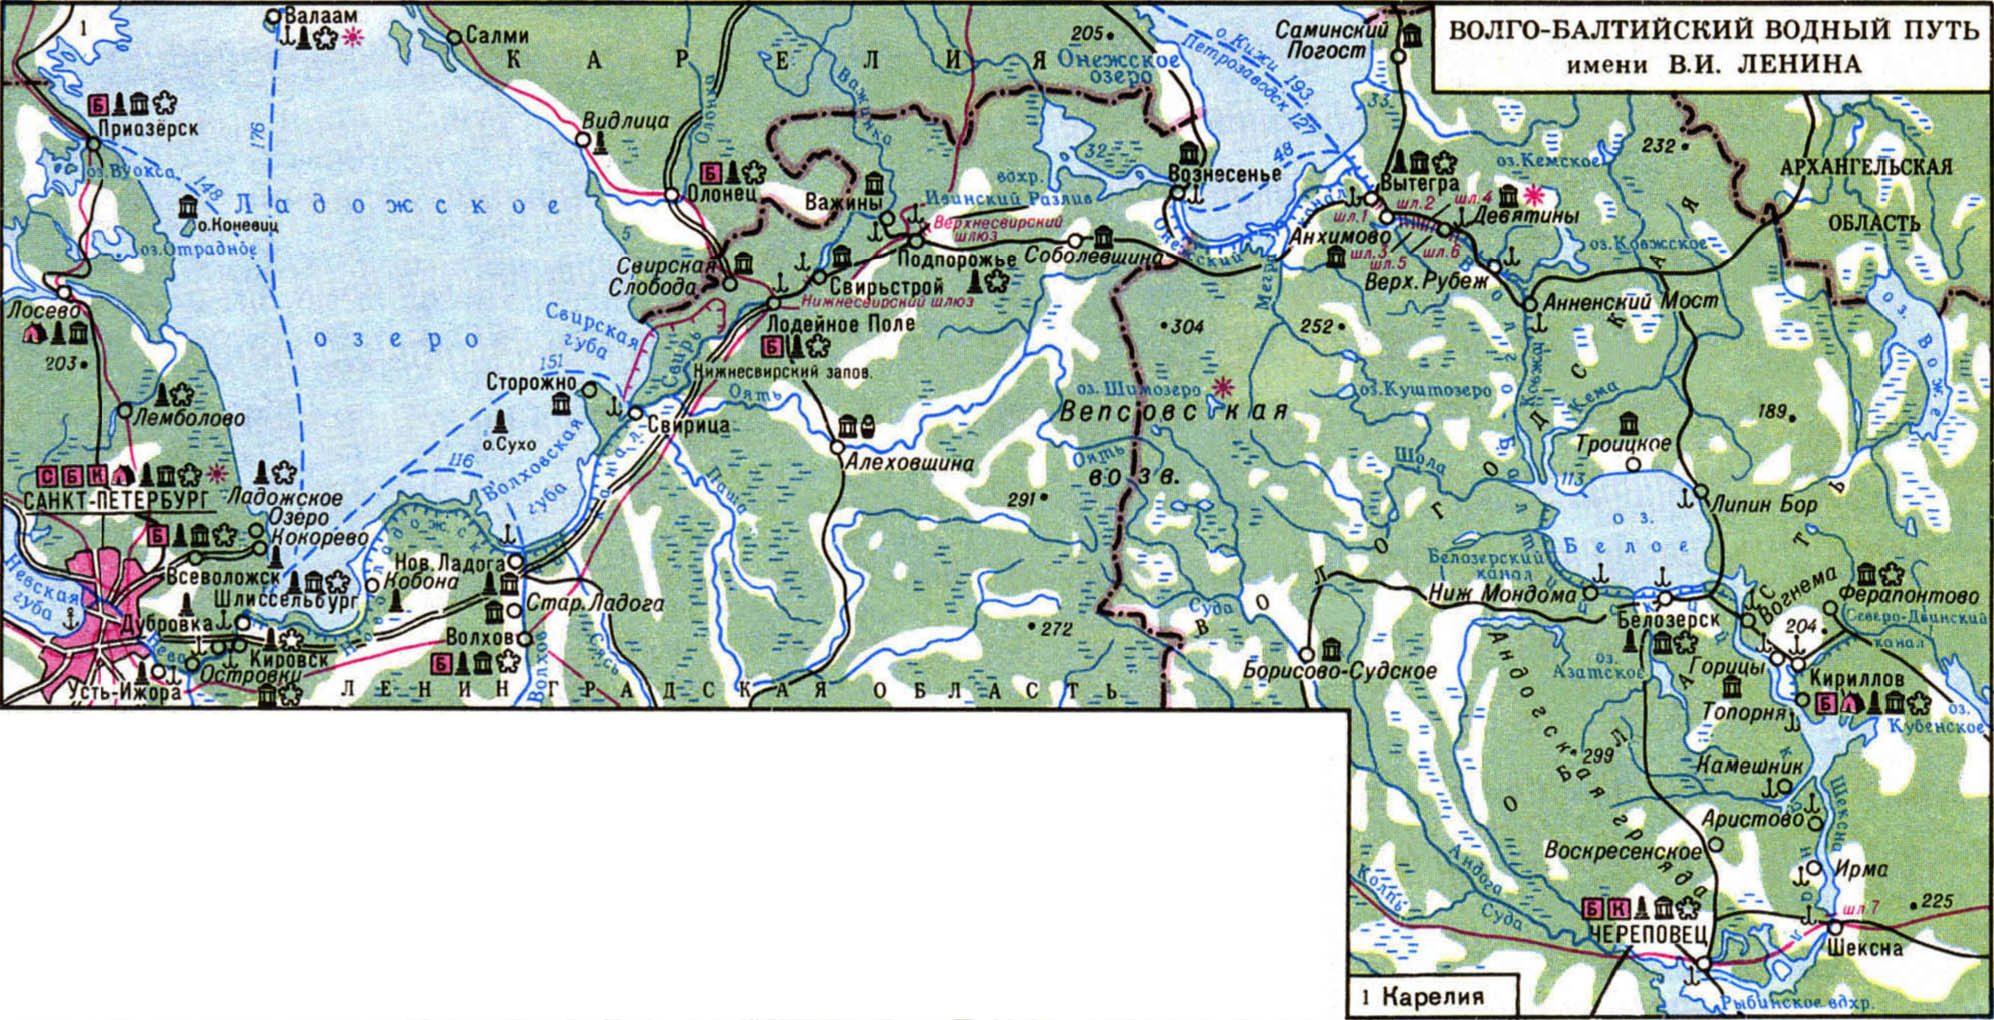 Где находится балт. Волго Балтийский канал Ладожское озеро. Озеро белое Волго Балтийский канал. Волго балтийски йводны путь. Волго-Балтийский Водный путь на карте.